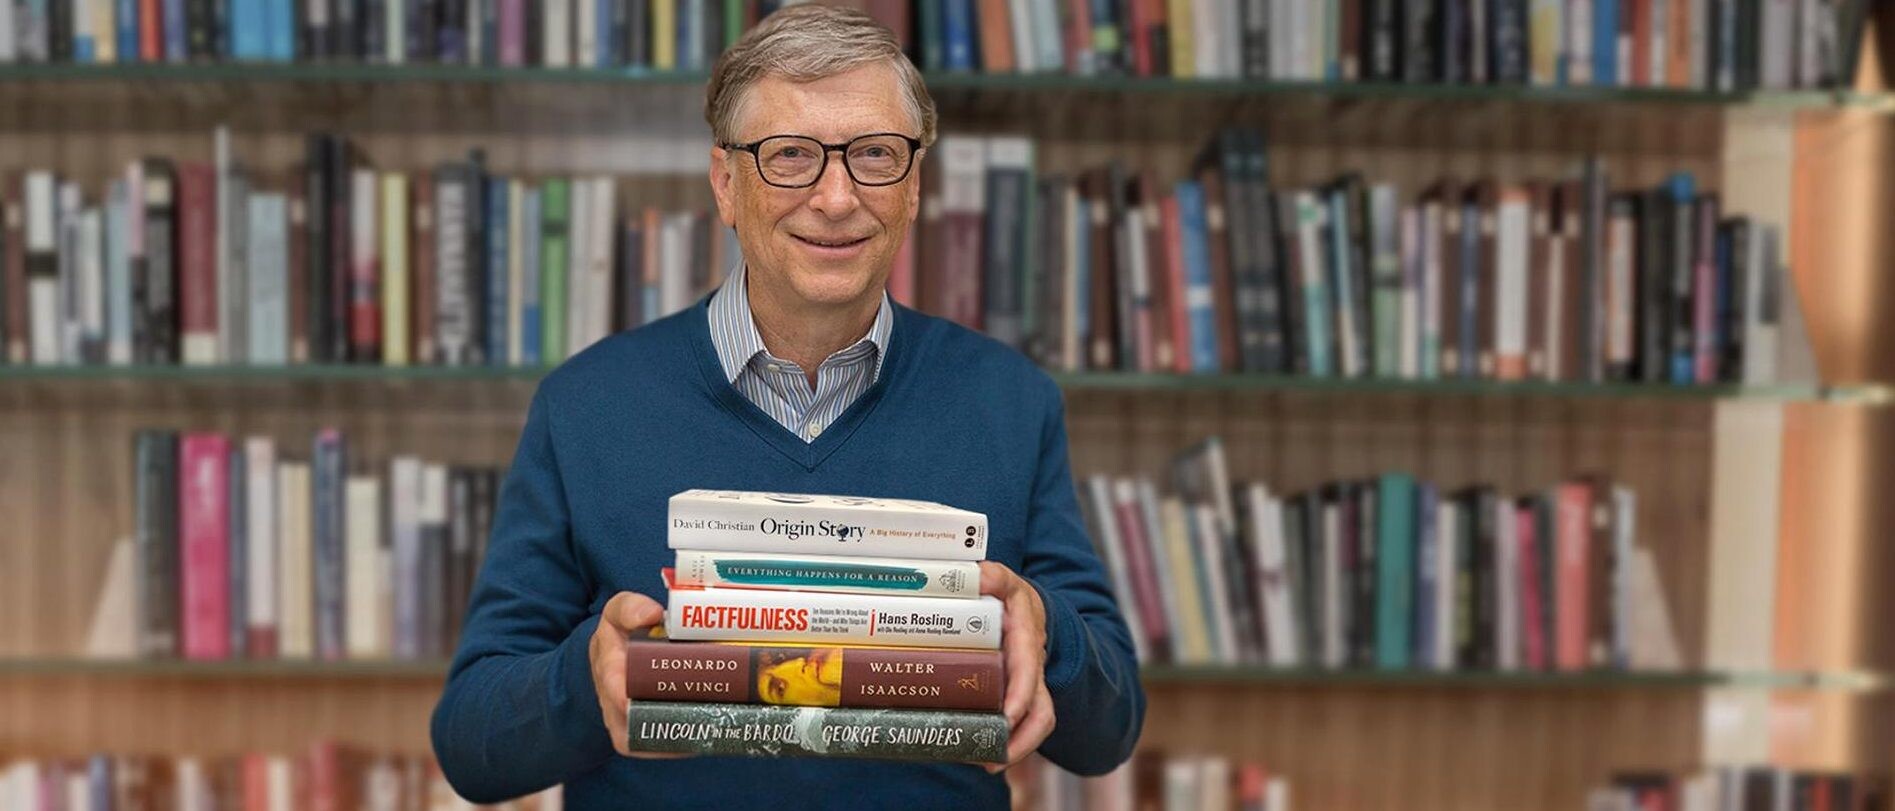 Všade s ním cestuje vrece plné kníh. Čo číta miliardár Bill Gates tento rok?